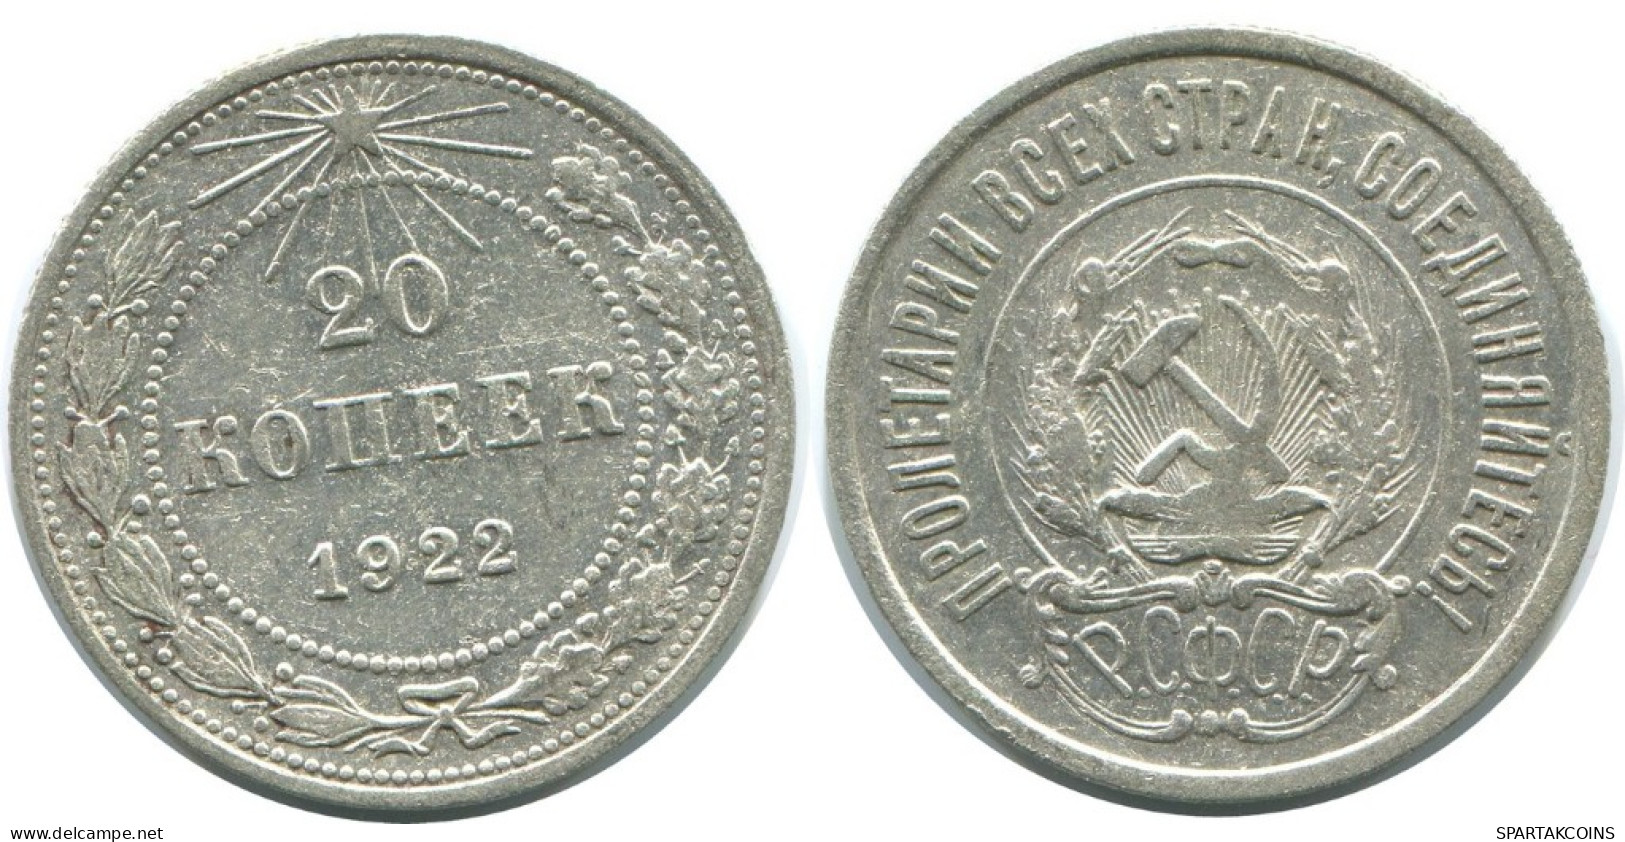 20 KOPEKS 1923 RUSIA RUSSIA RSFSR PLATA Moneda HIGH GRADE #AF387.4.E.A - Russland